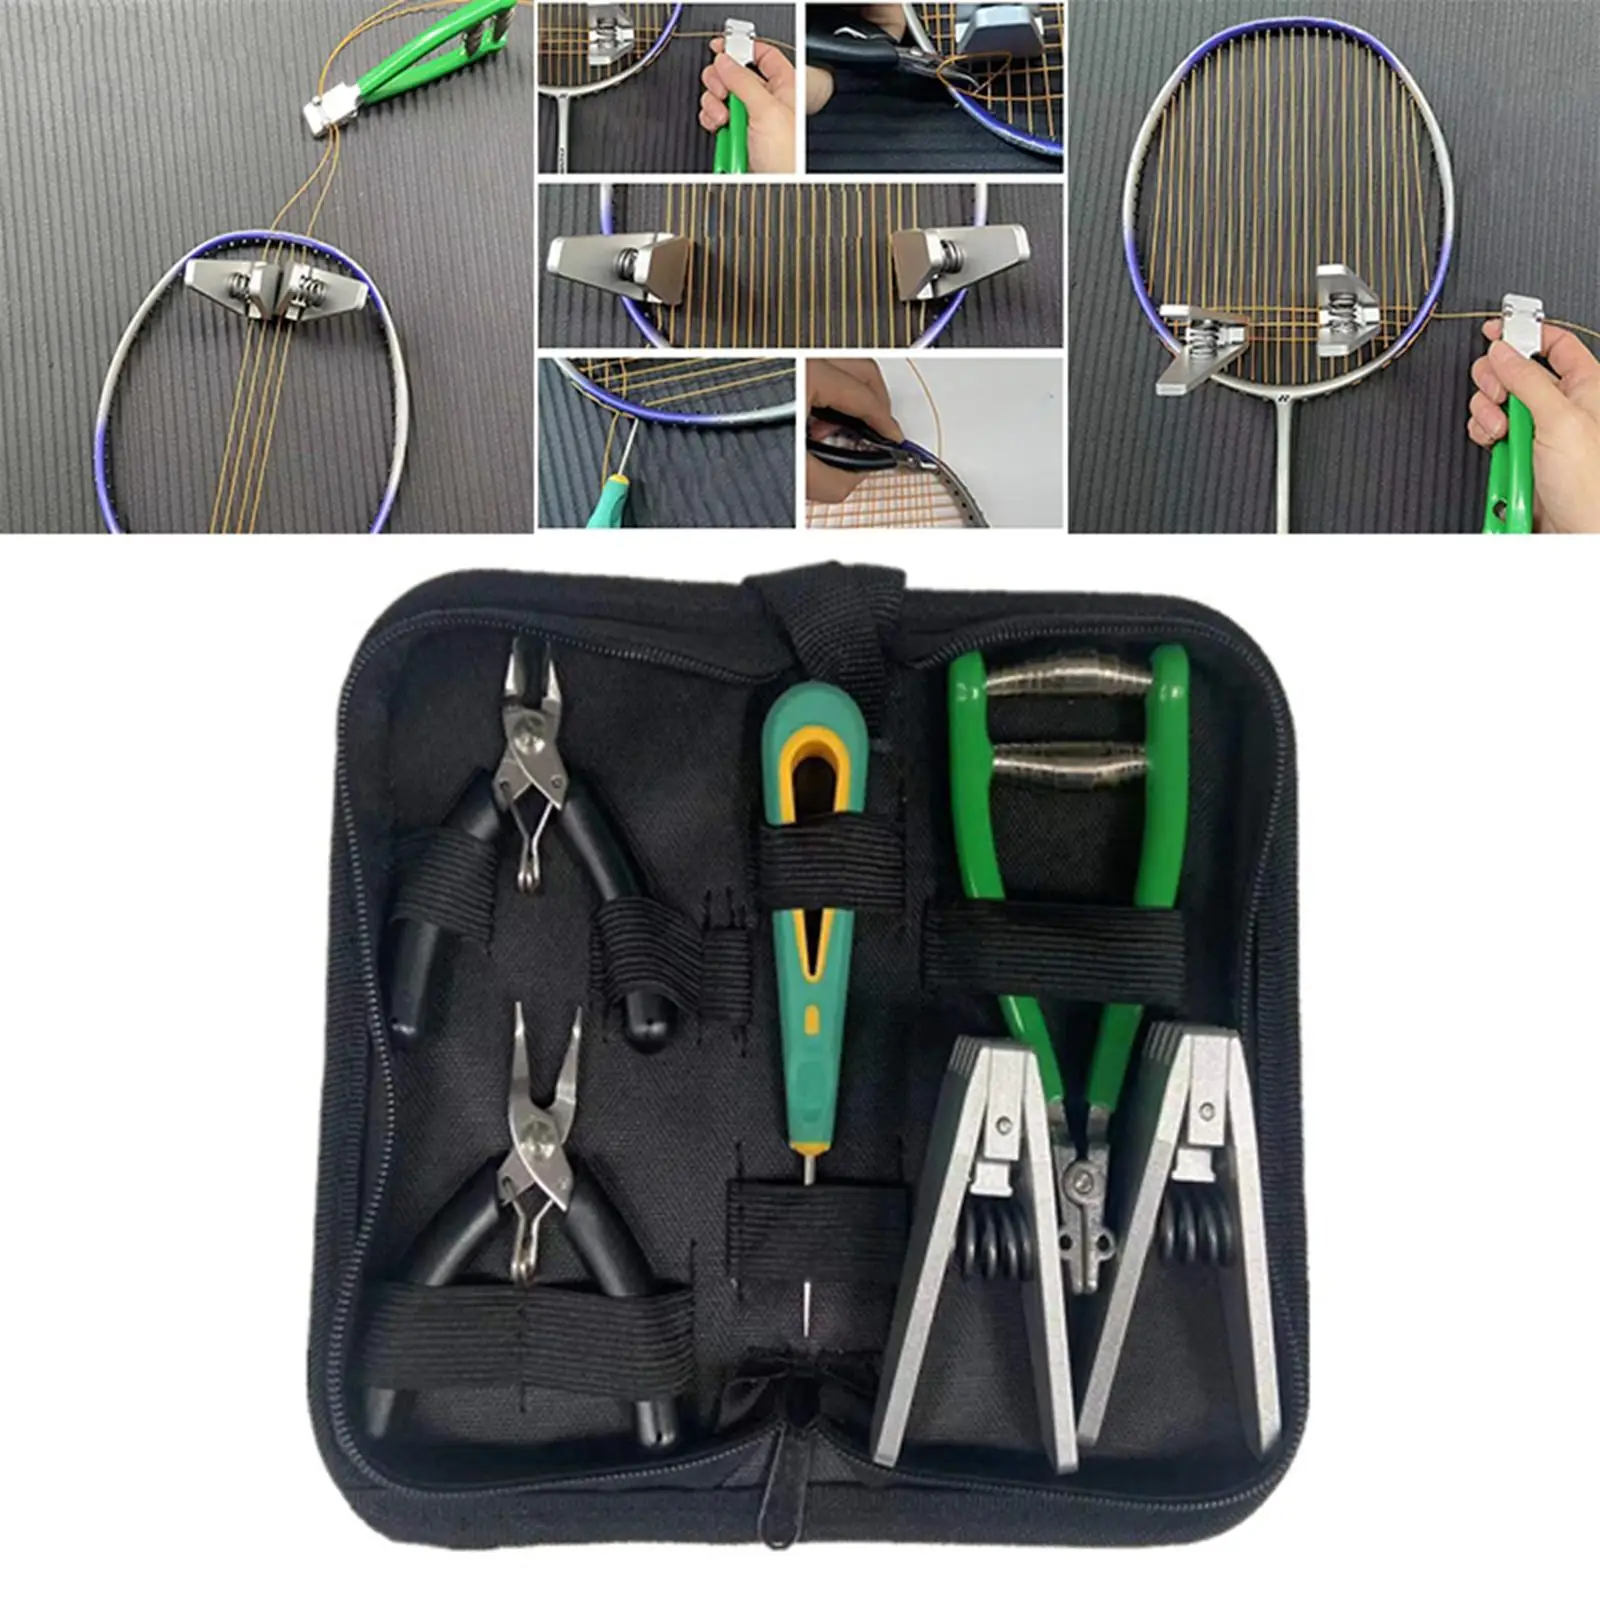 Starting Stringing Clamp Tool Badminton Squash Tennis Racket Storage Bag